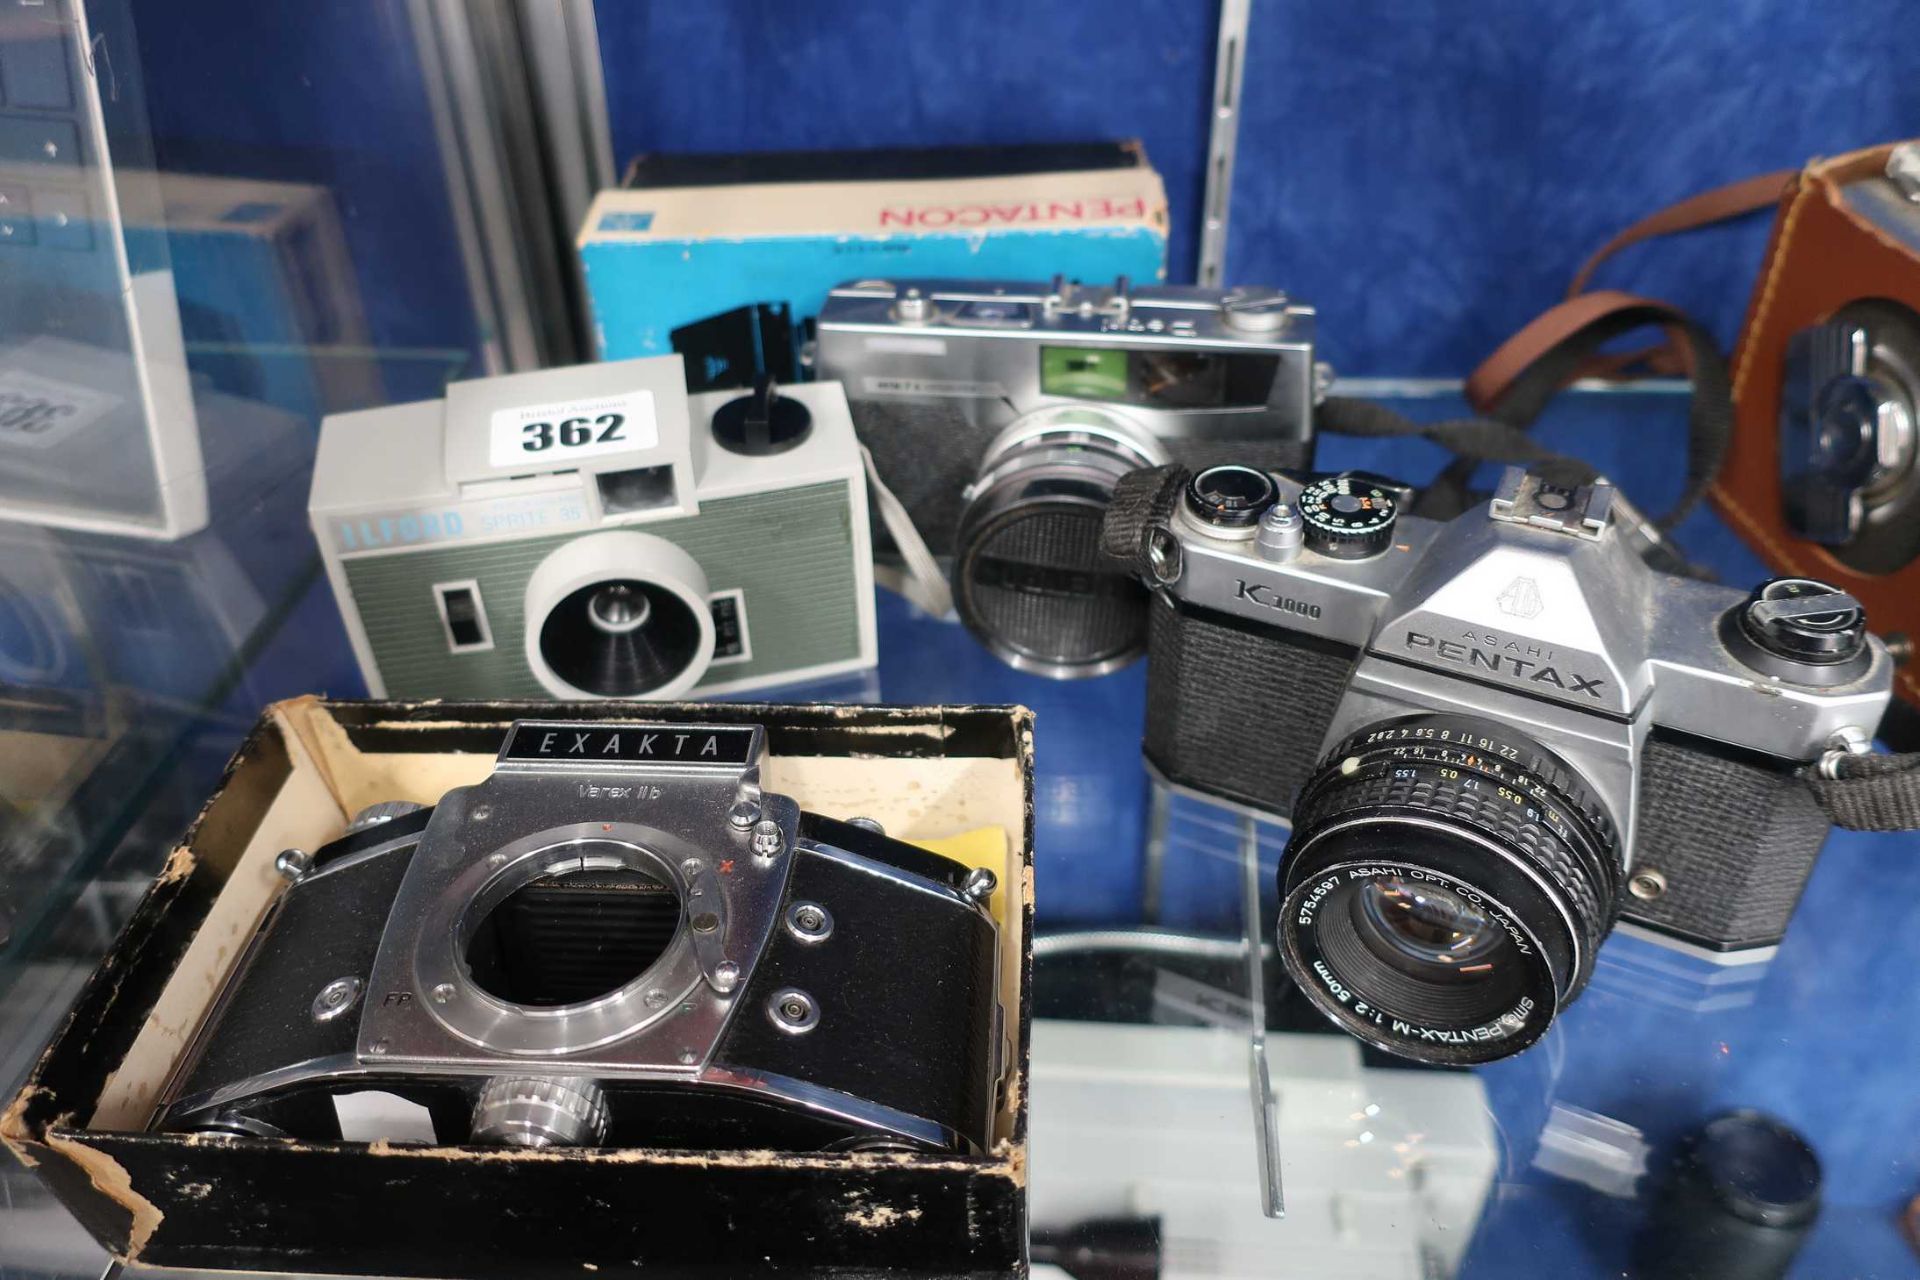 Four vintage film cameras; an Asahi Pentax K1000 camera with a SMC Pentax-M 50mm F2 prime lens, a